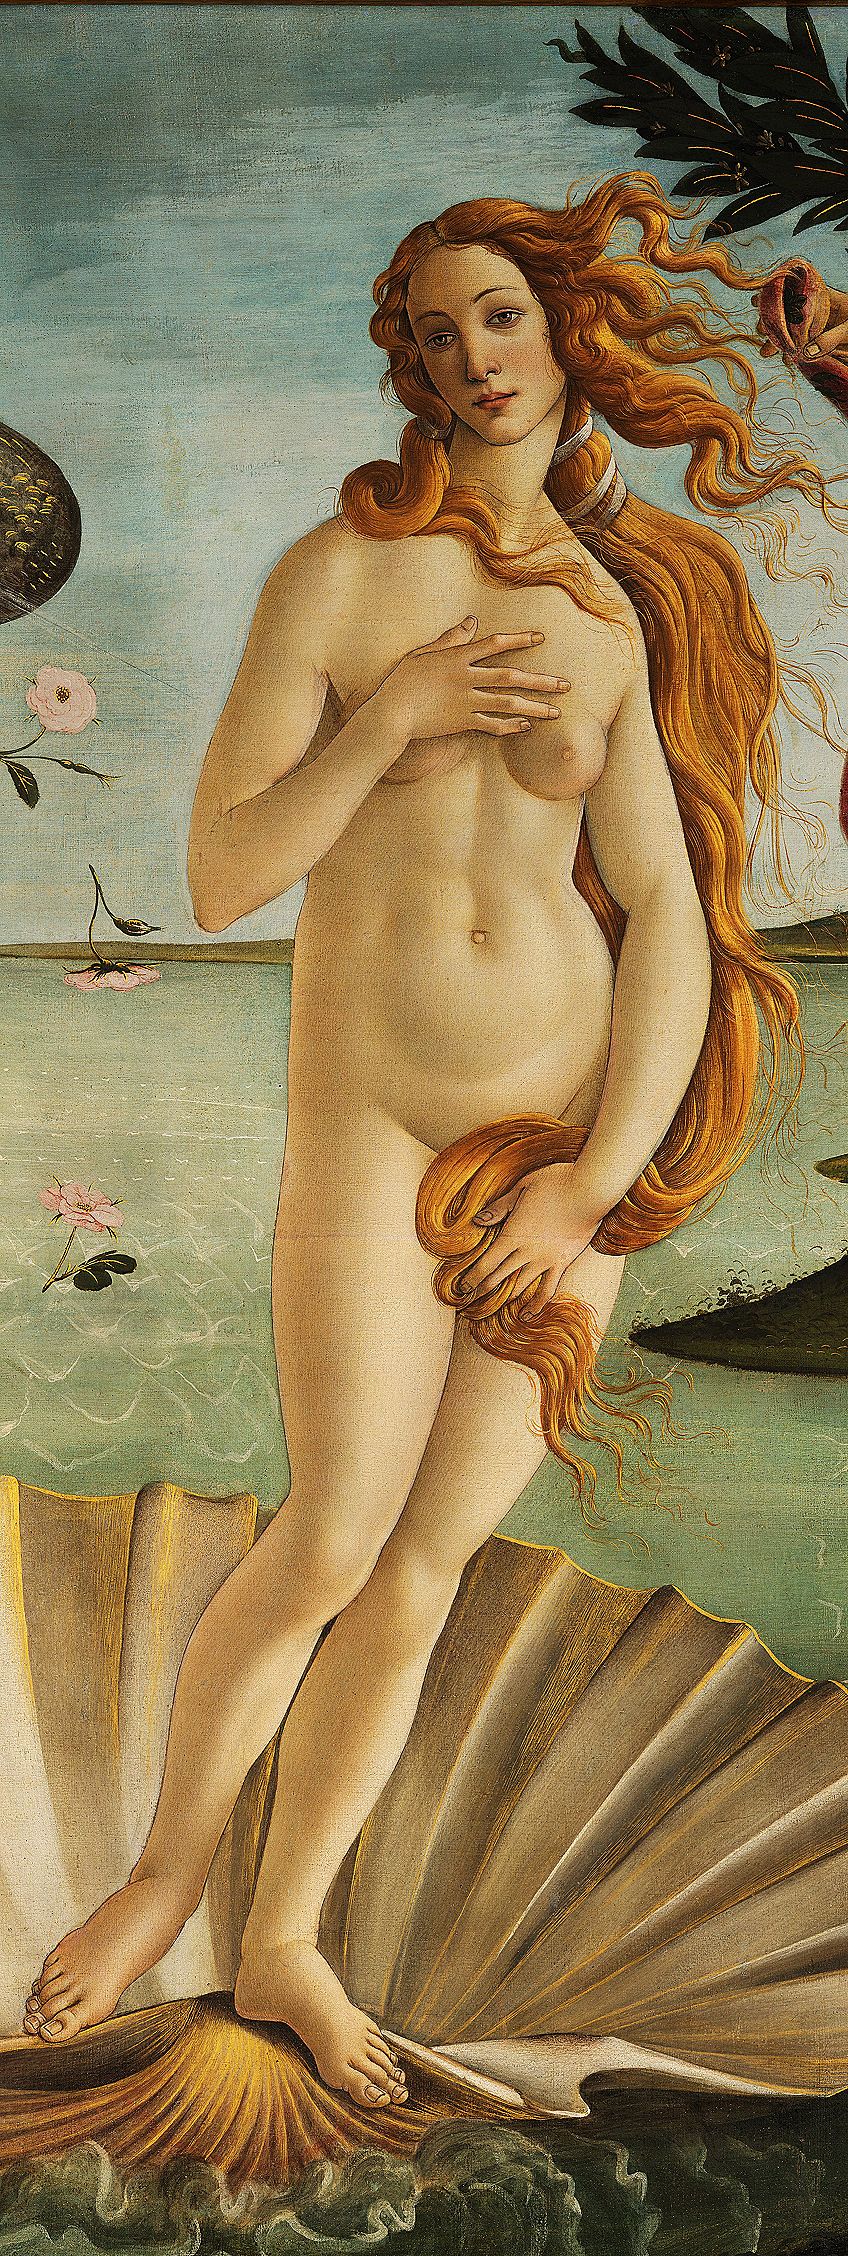 Venus in Birth of Venus Painting